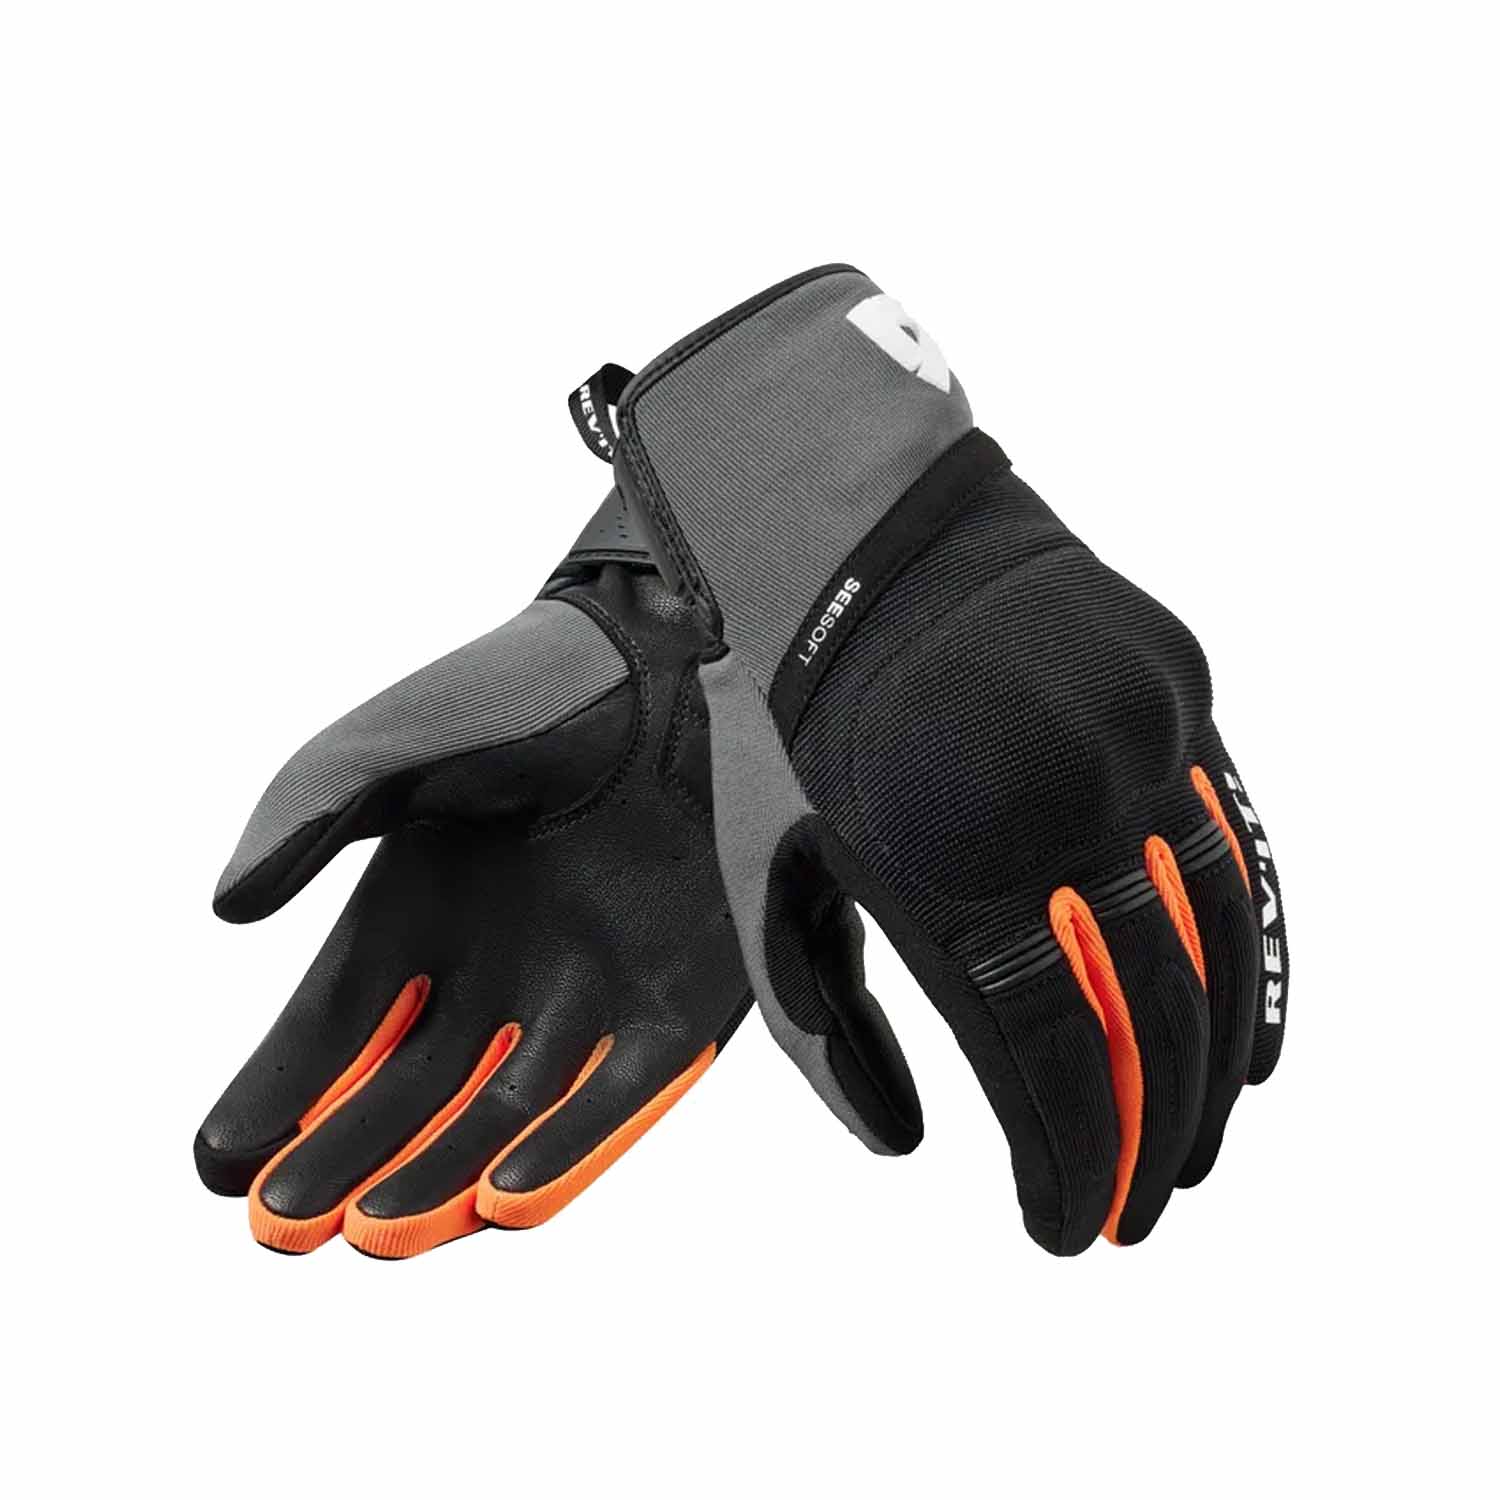 Image of REV'IT! Mosca 2 Gloves Black Orange Größe M